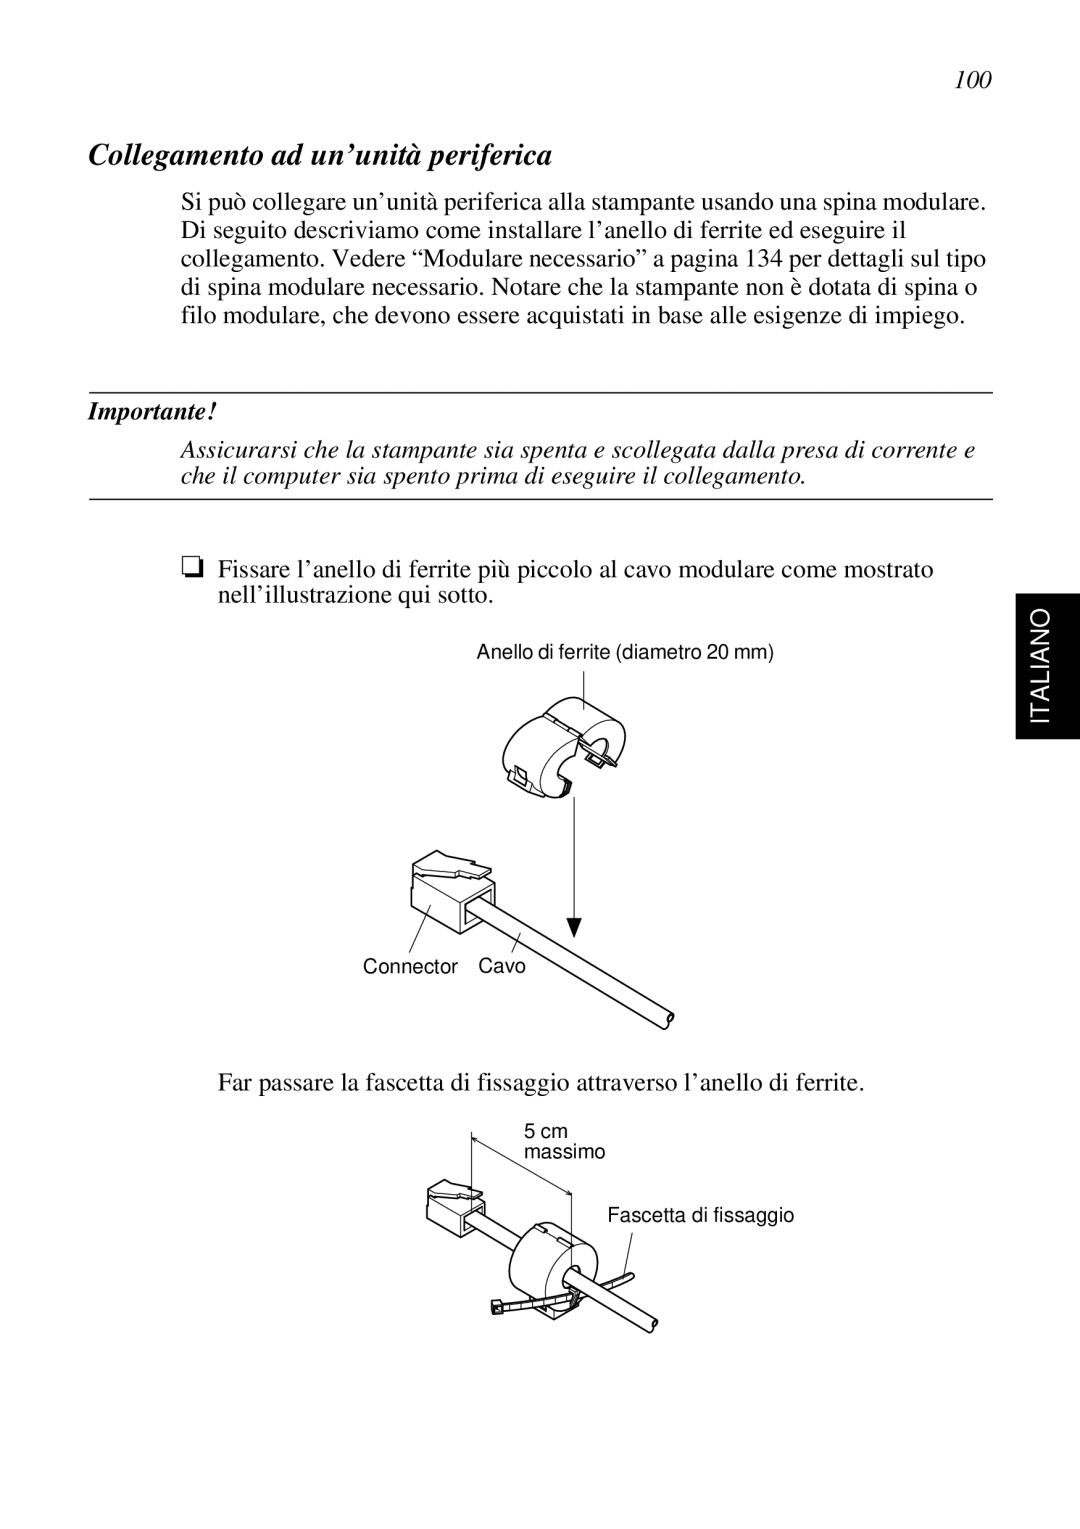 Star Micronics SP298 user manual Collegamento ad un’unità periferica, Importante, Italiano 